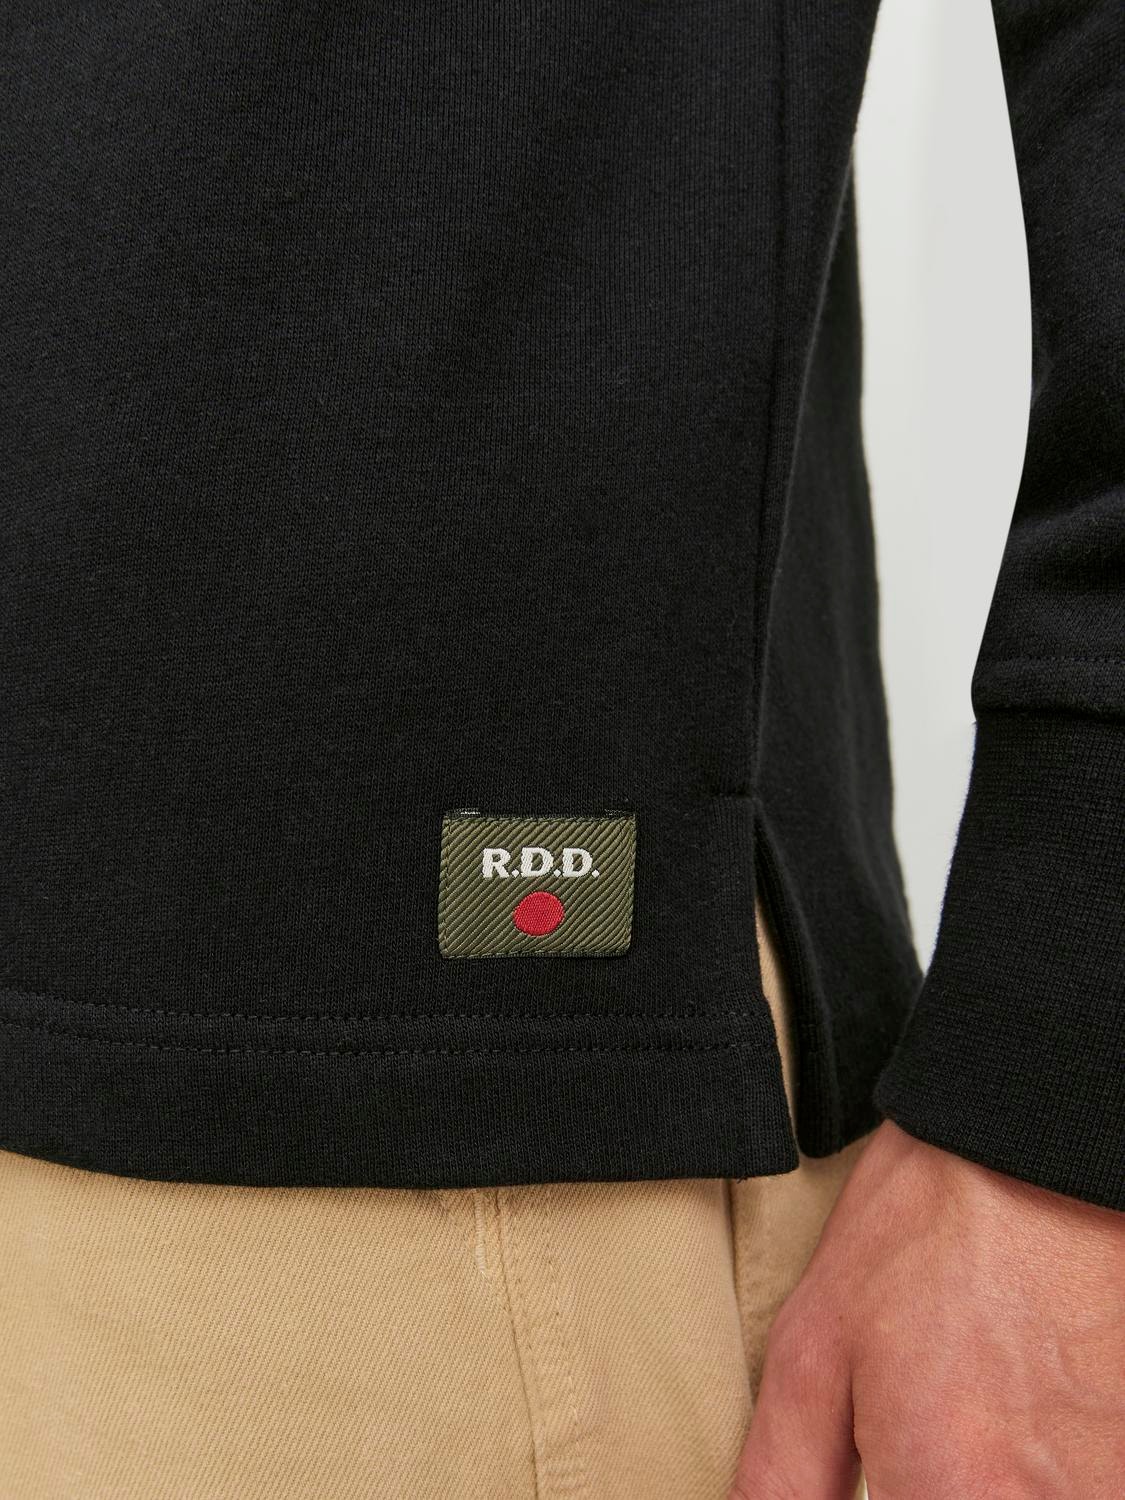 Jack & Jones RDD Printed Crew neck Sweatshirt -Black - 12243501